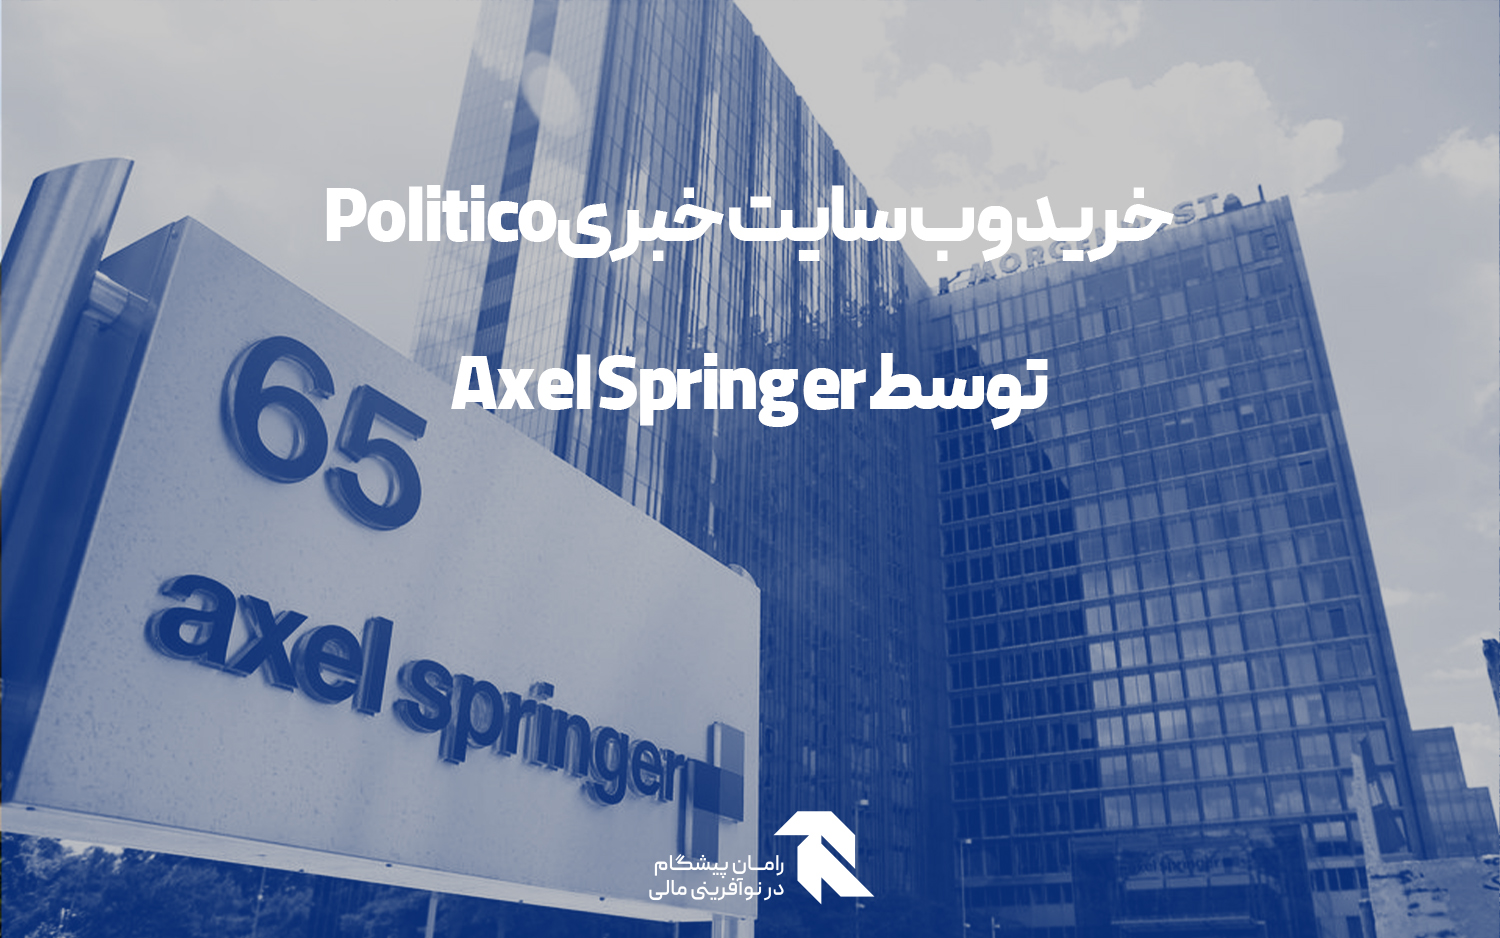 خرید وب سایت خبری Politico توسط Axel Springer